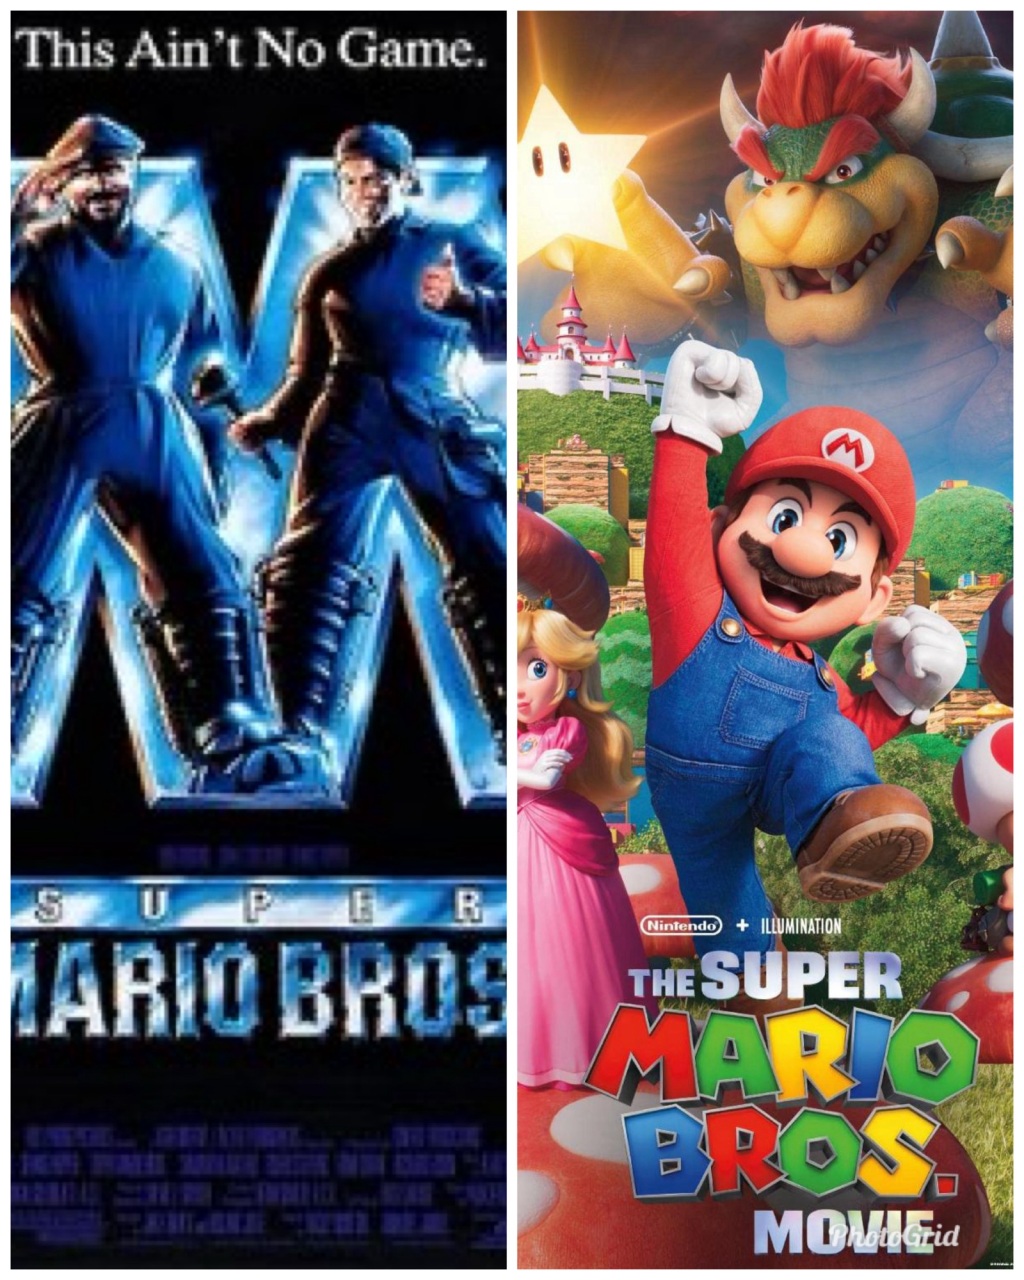 Super Mario Bros. & The Super Mario Bros. Movie